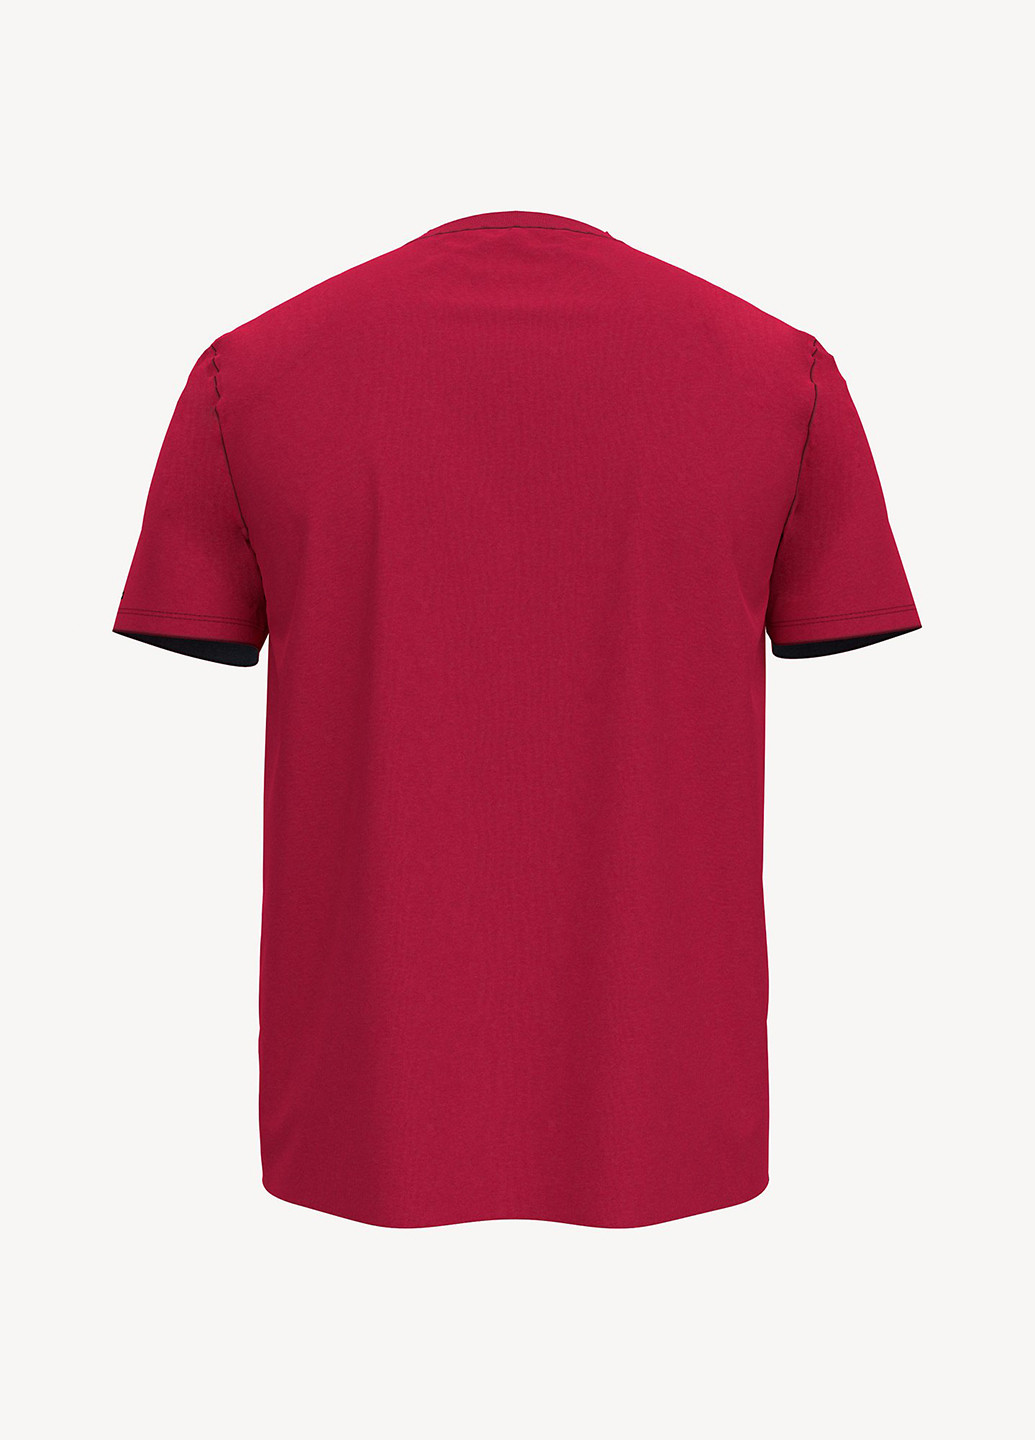 Вишневая футболка Tommy Hilfiger